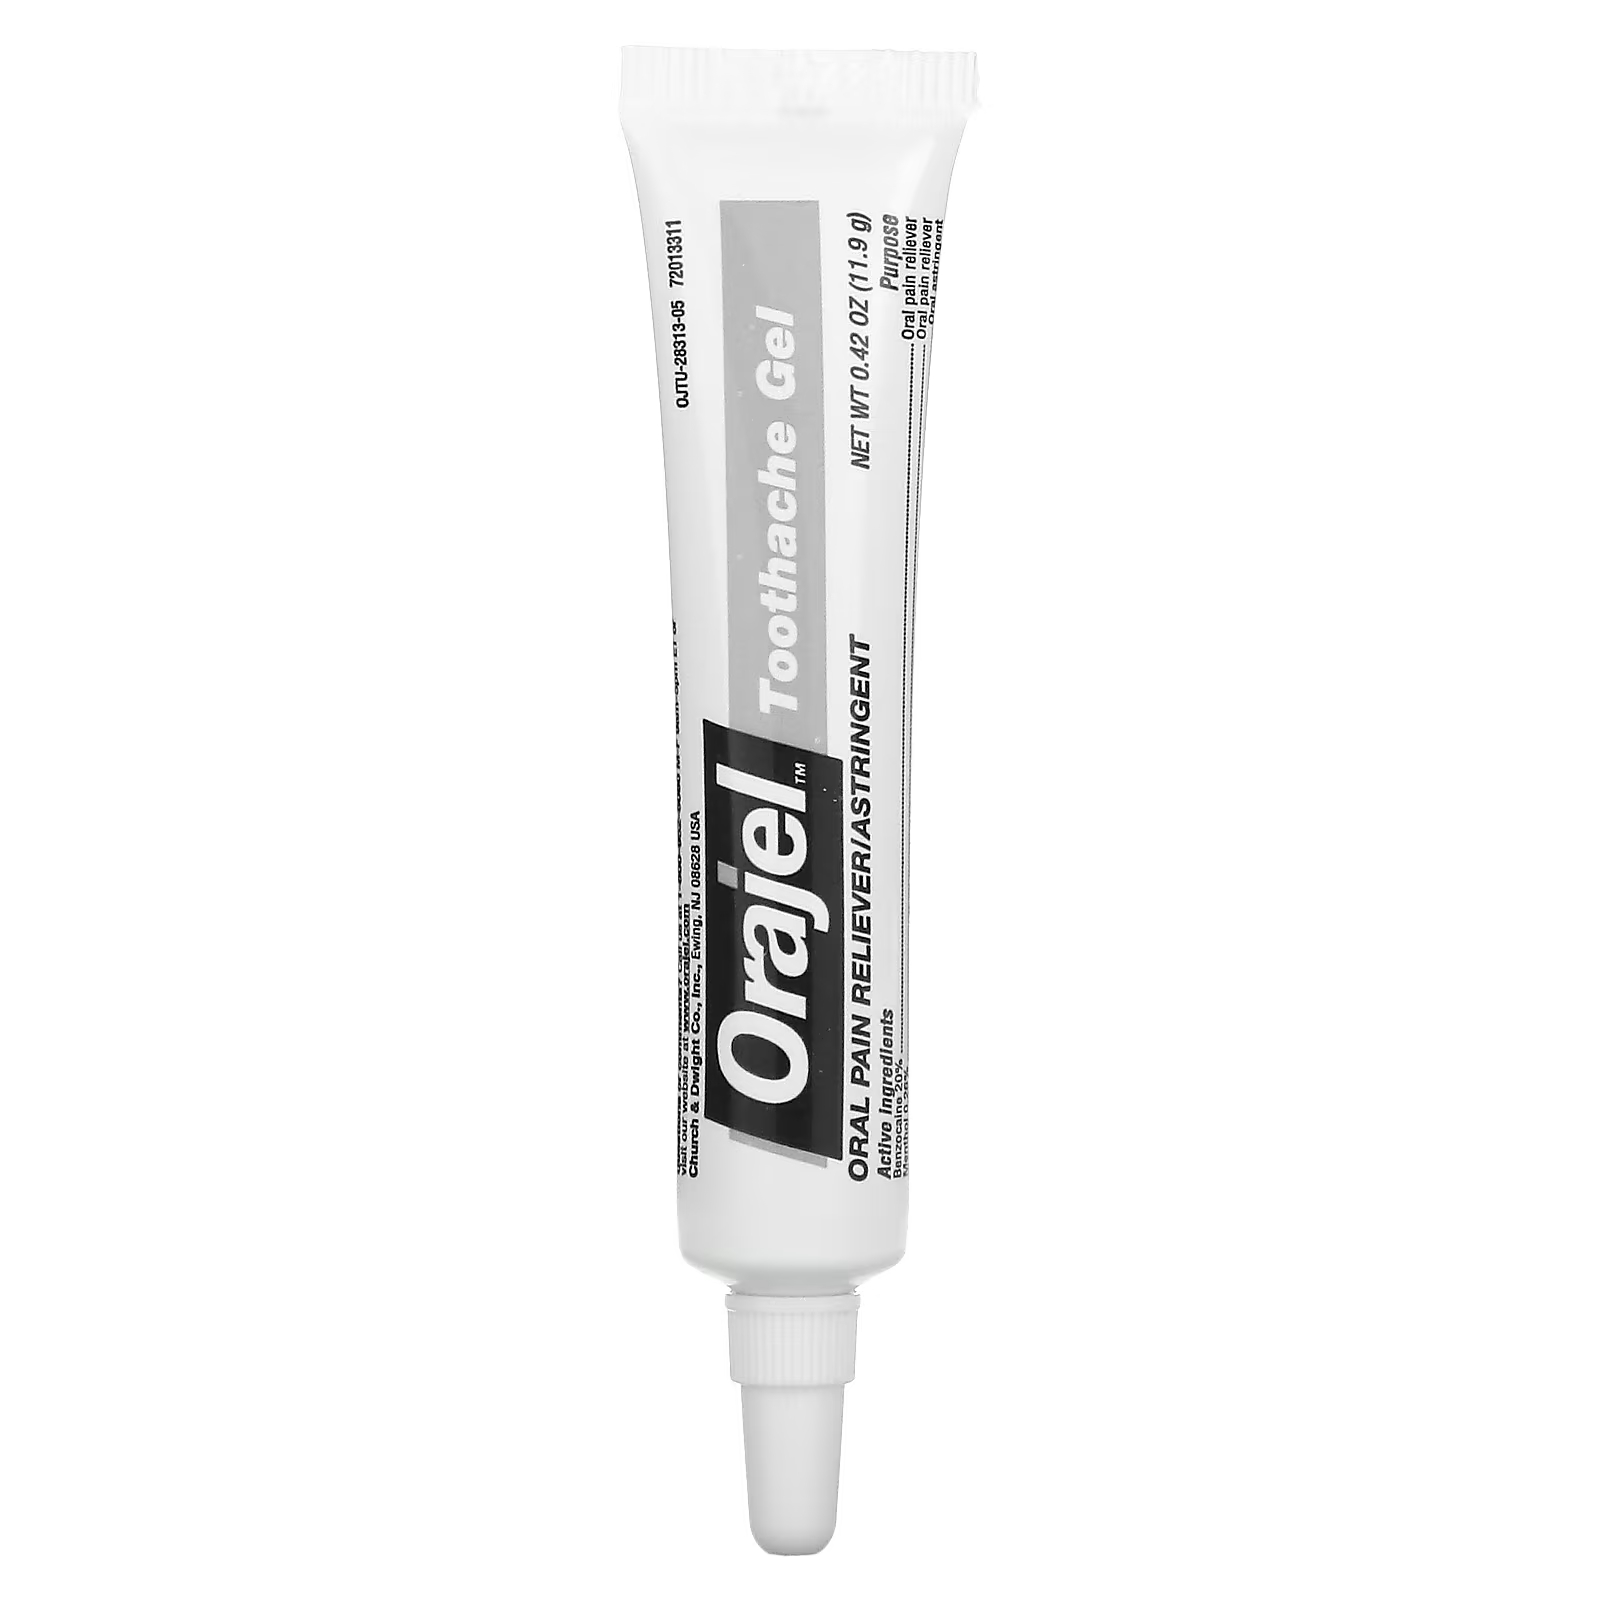 Гель обезболивающий Orajel 3x для лечения зубной боли и десен orajel 3x гель для лечения зубной боли и десен дополнительная сила 7 г 0 25 унции